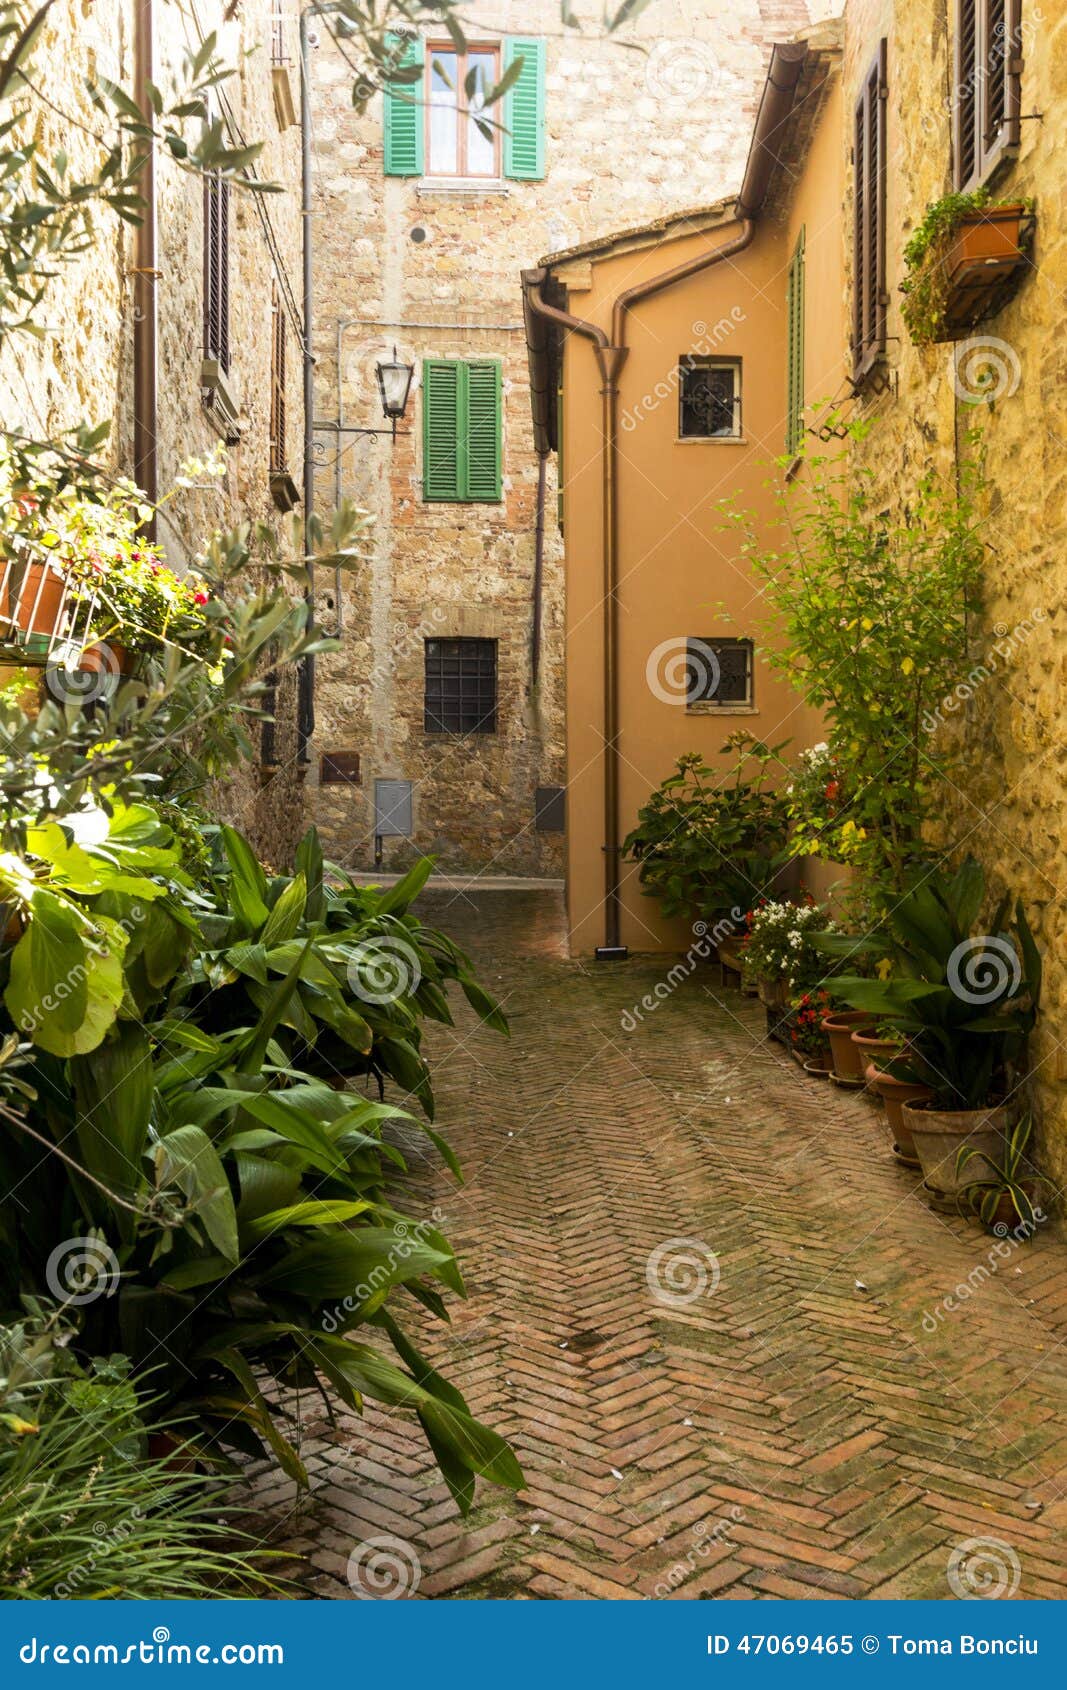 Street in Tuscany stock image. Image of farmland, italian - 47069465